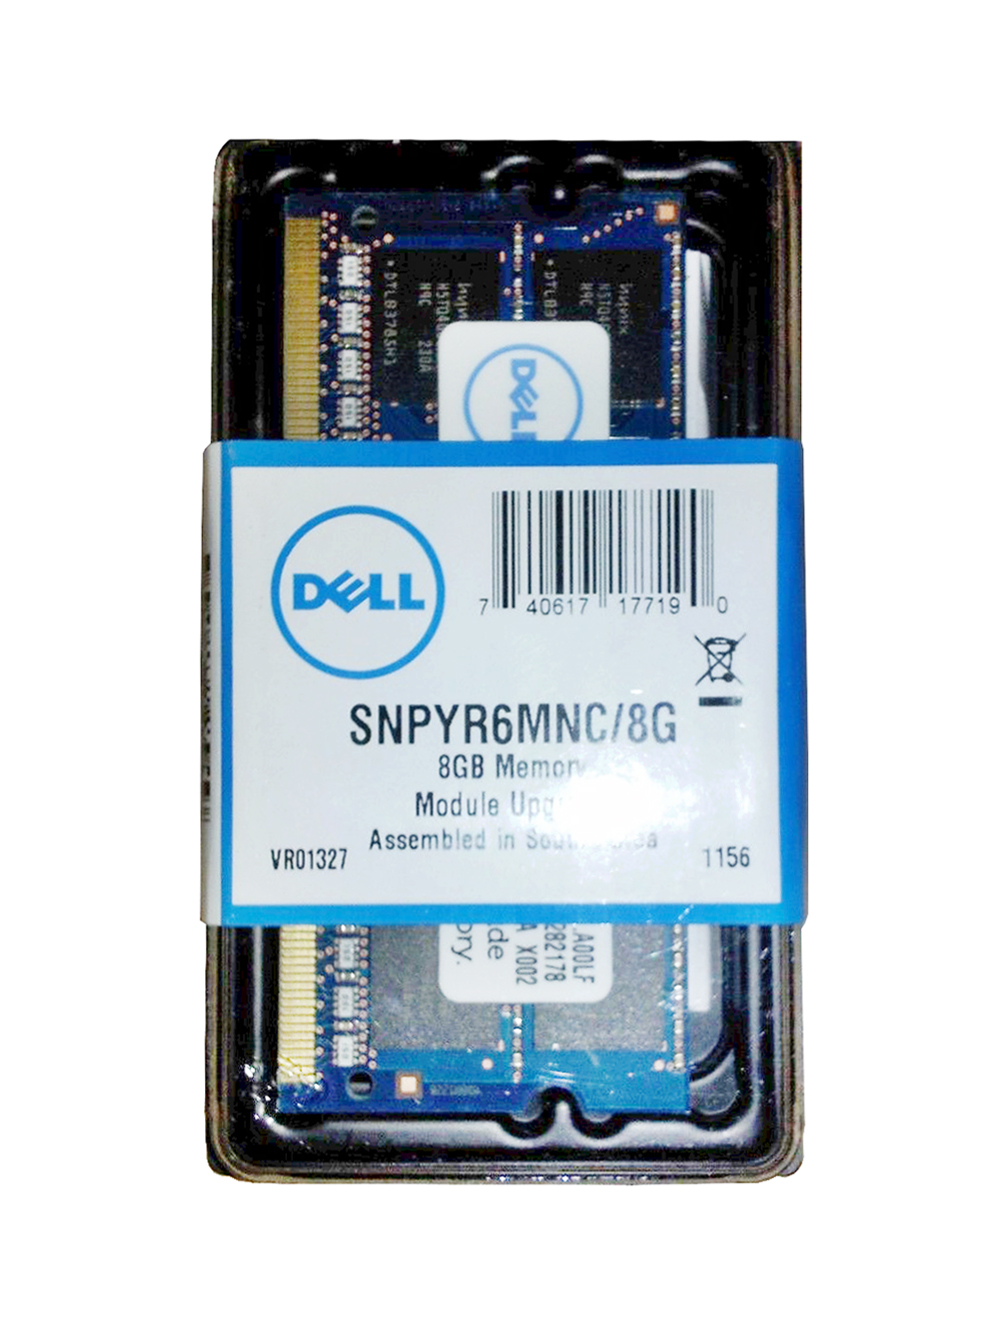 SNPYR6MNC/8G Dell 8GB PC3-10600 DDR3-1333MHz non-ECC Unbuffered CL9 204-Pin SoDimm Dual Rank Memory Module for Precision Mobile Workstation M4500, M6500